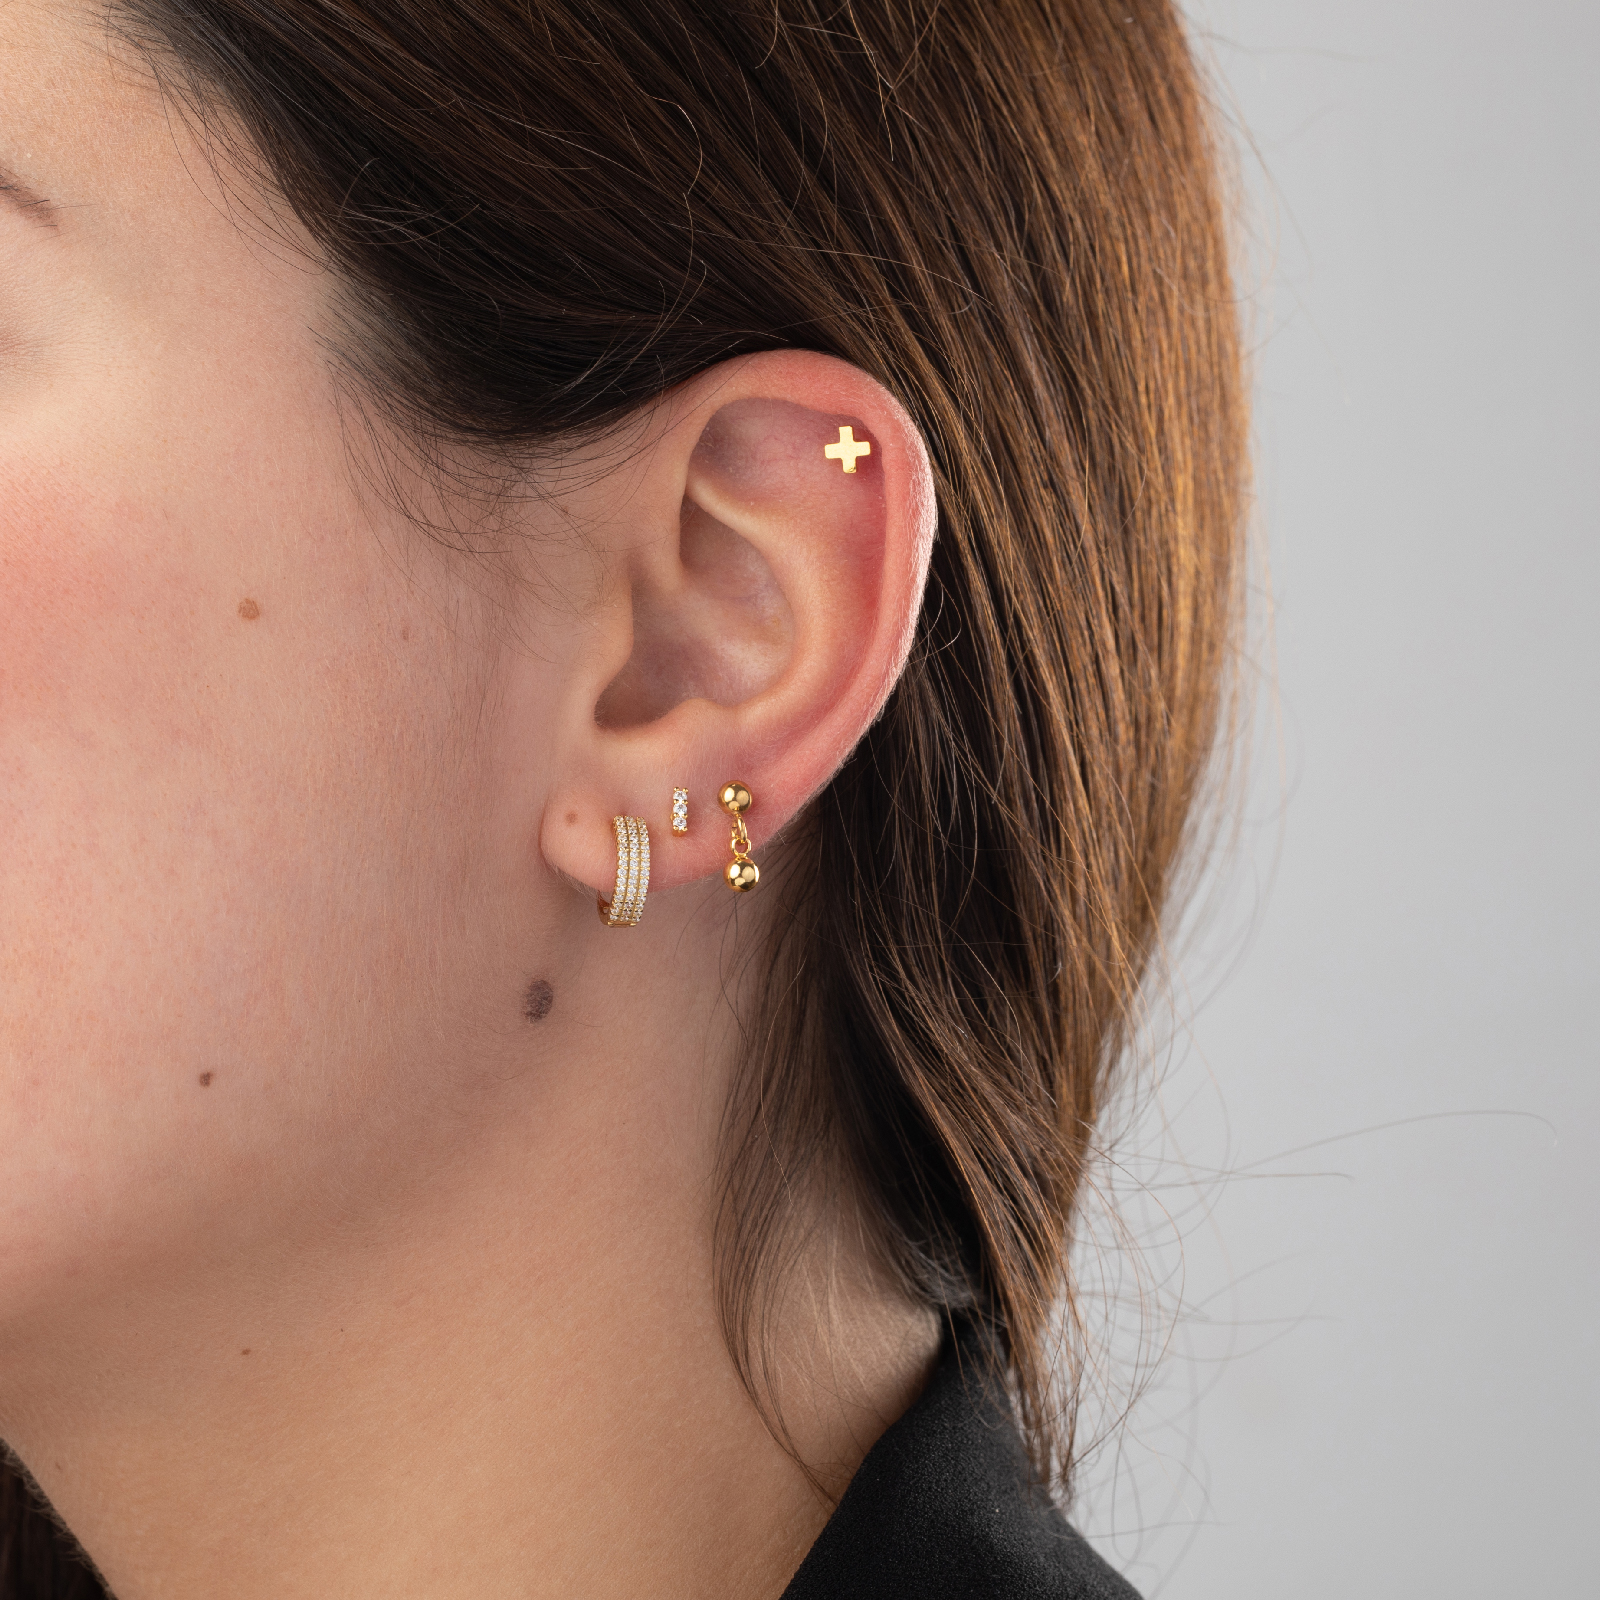 Double Piercing Earrings Second Hole Earrings For Women, Earrings For Double  Pierced Ears, Double Hole Earrings Chain, Earrings For Women - Temu United  Kingdom